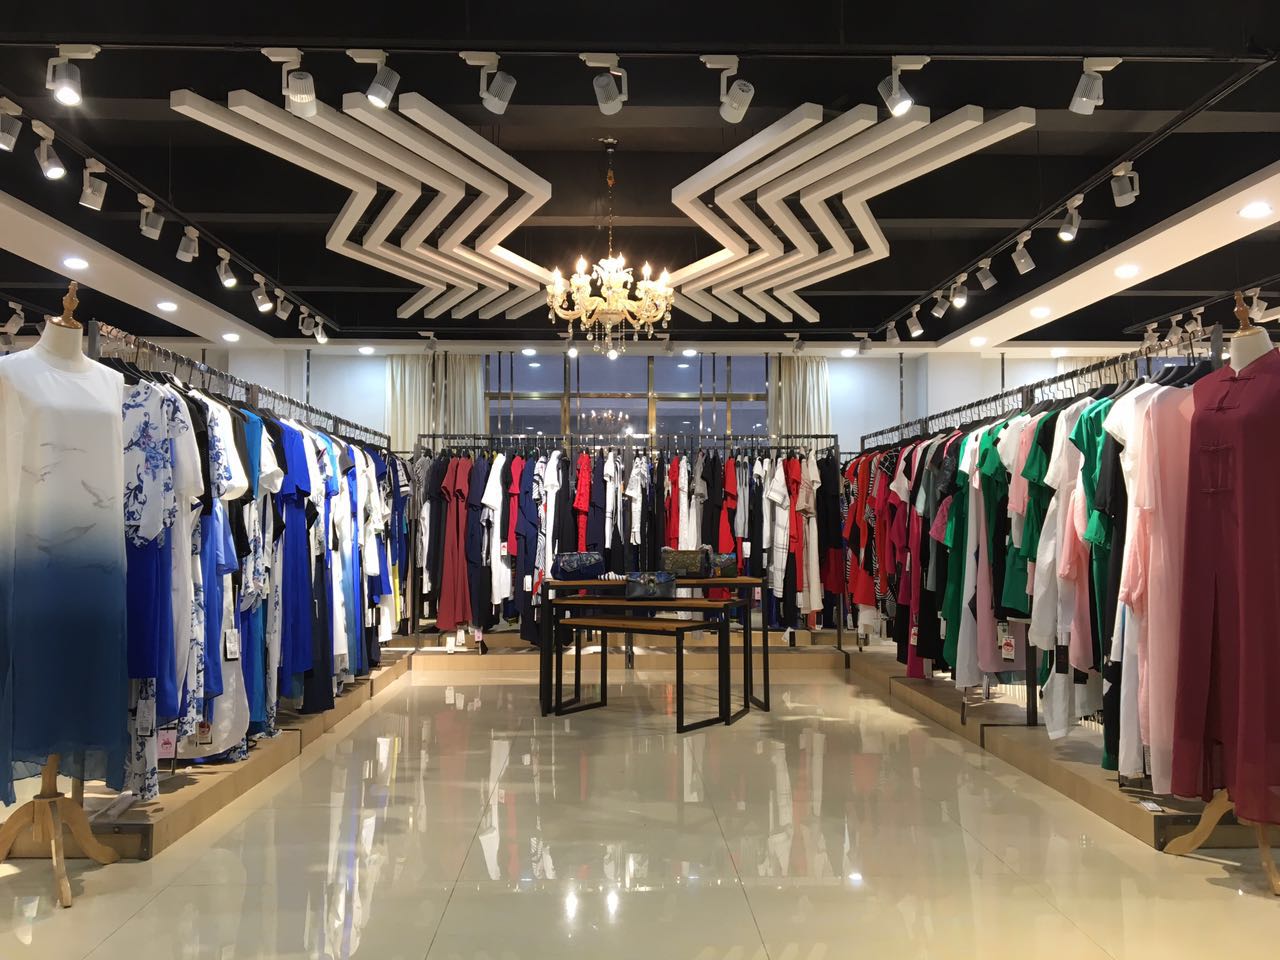 上海衣服批发市场进货夏季连衣裙  ZOLLE 因为